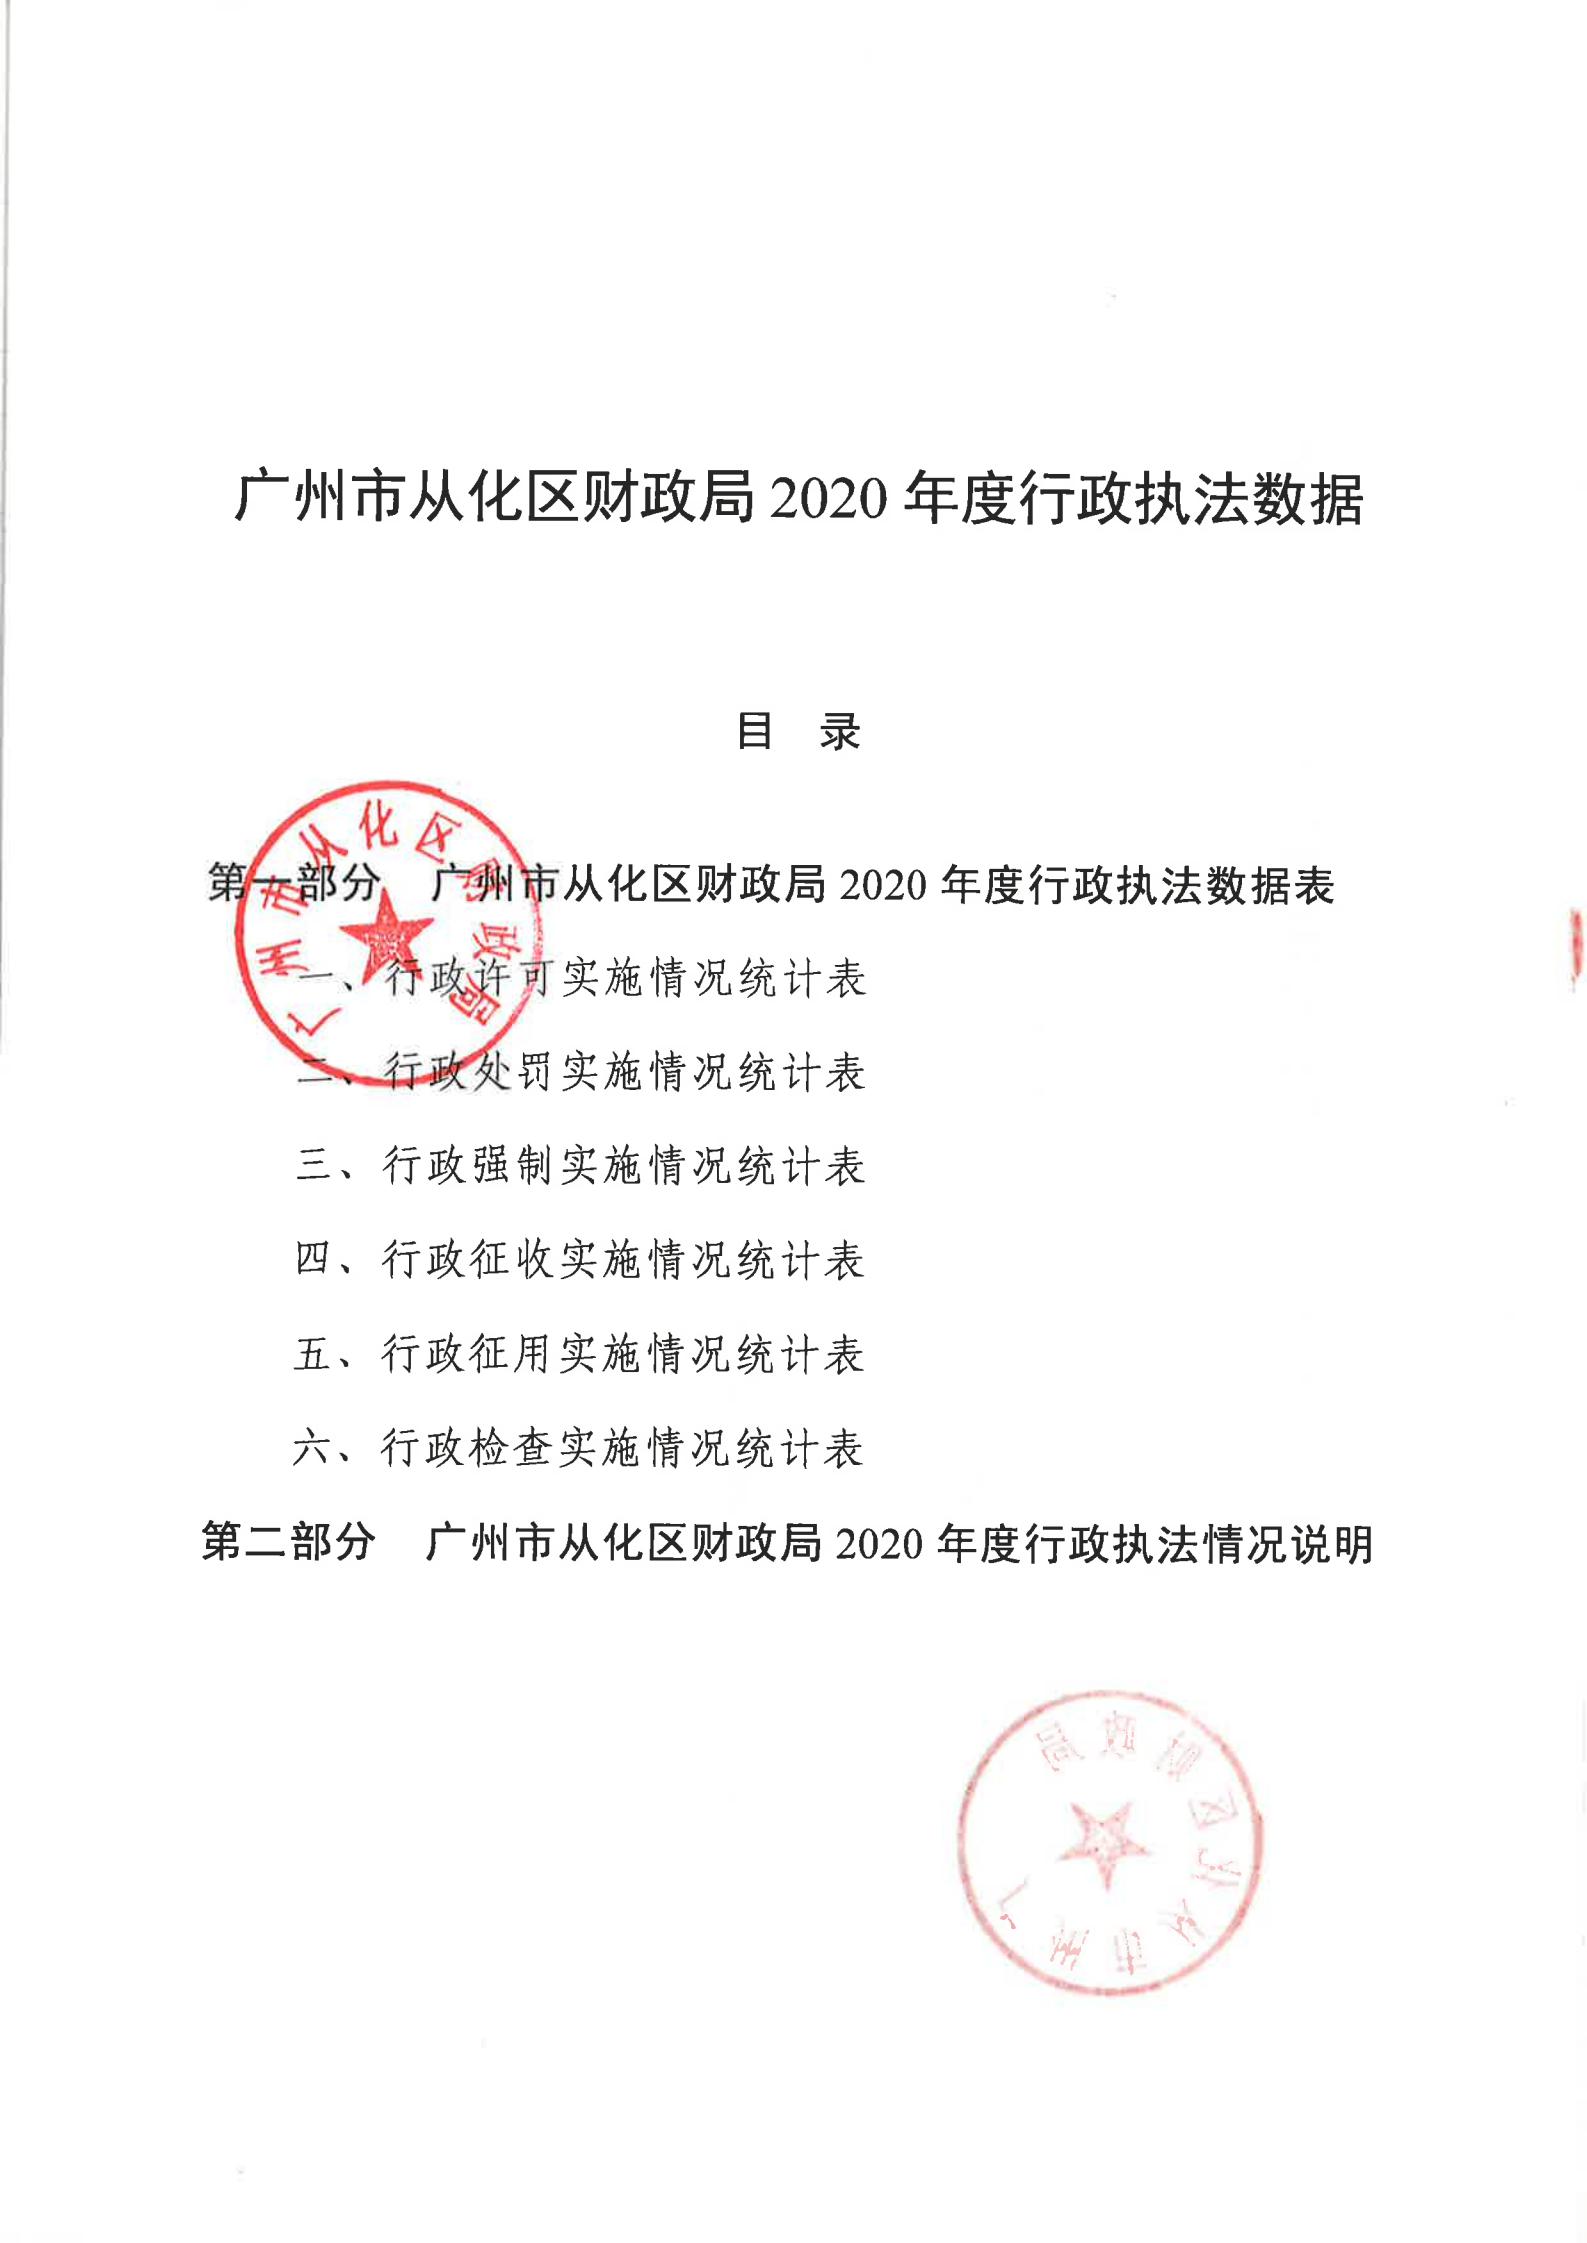 广州市从化区财政局2020年度行政执法数据_00.jpg